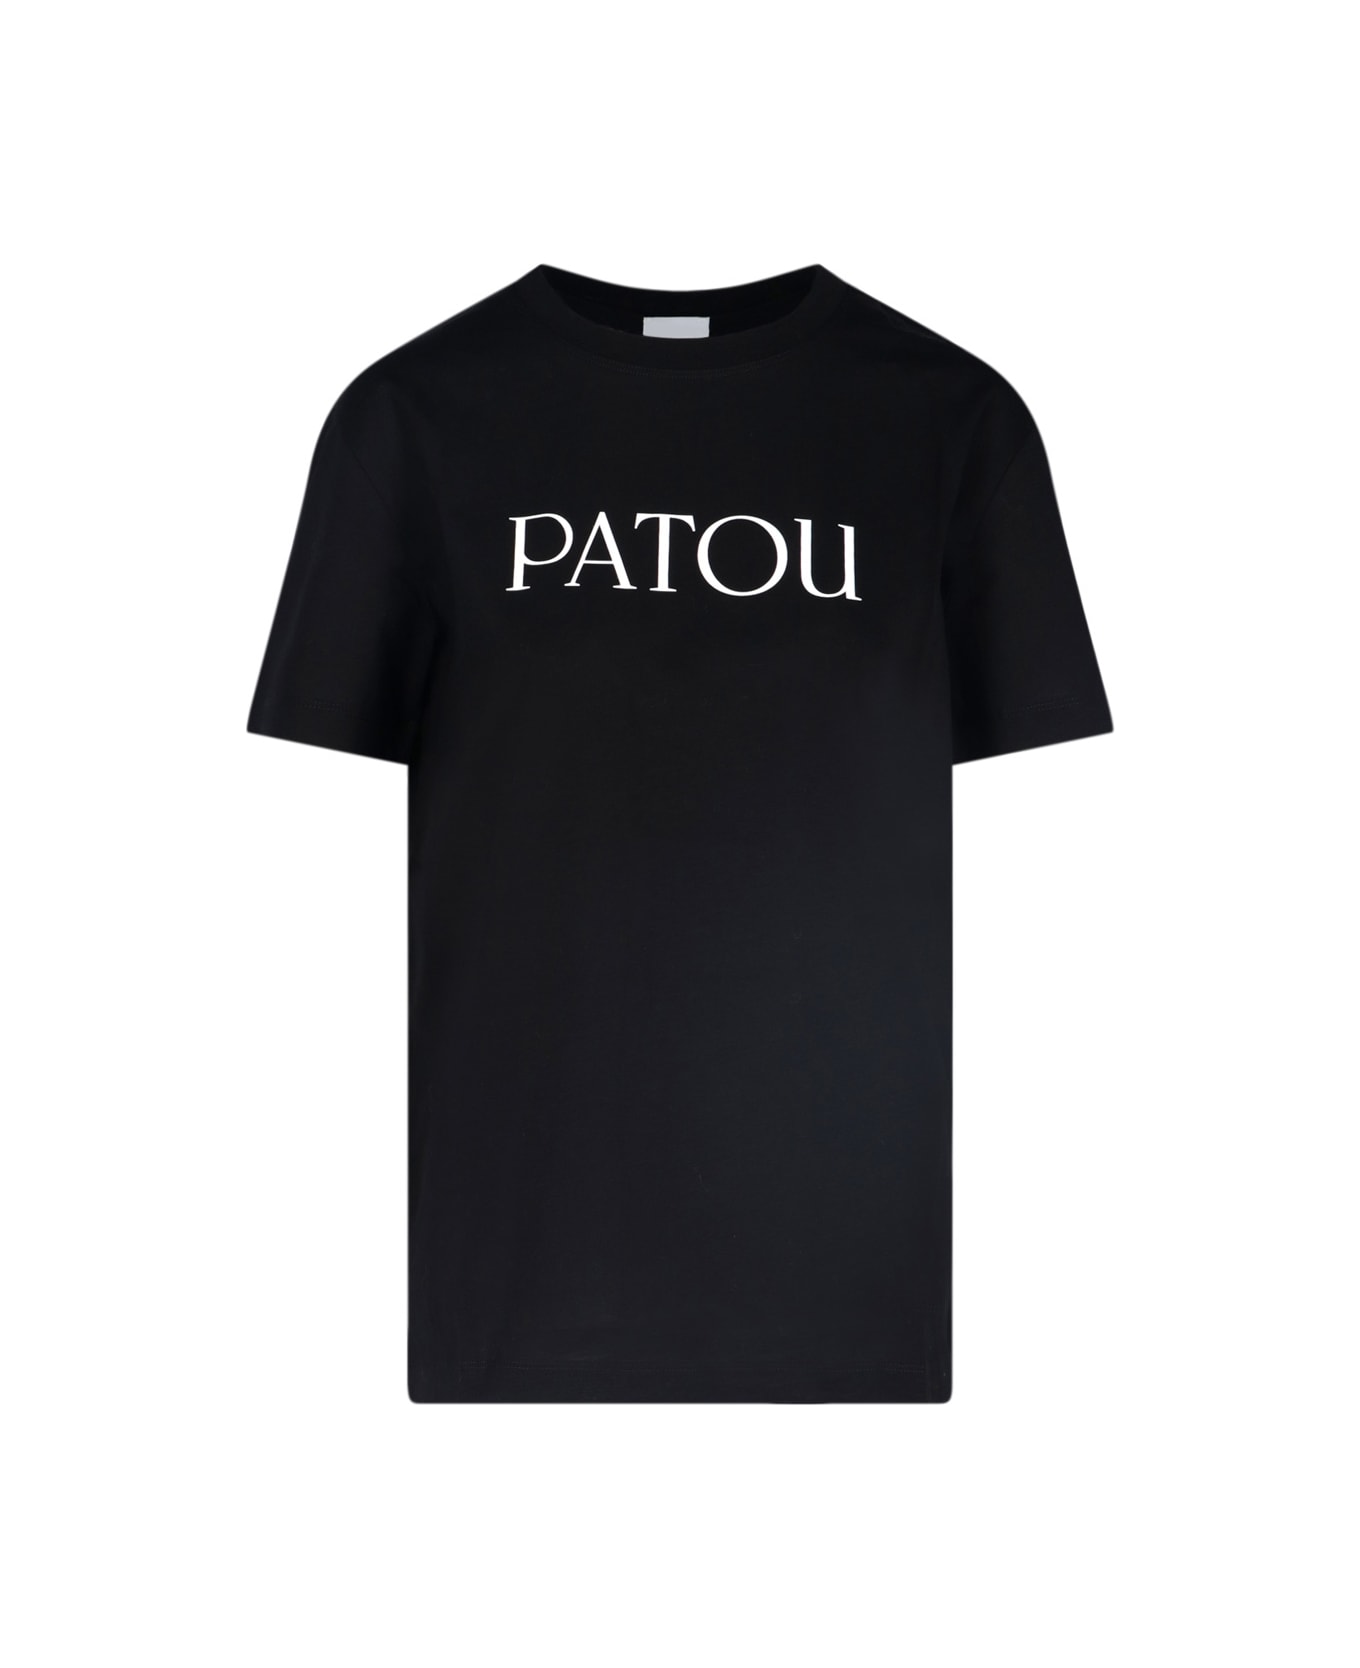 Patou Logo T-shirt